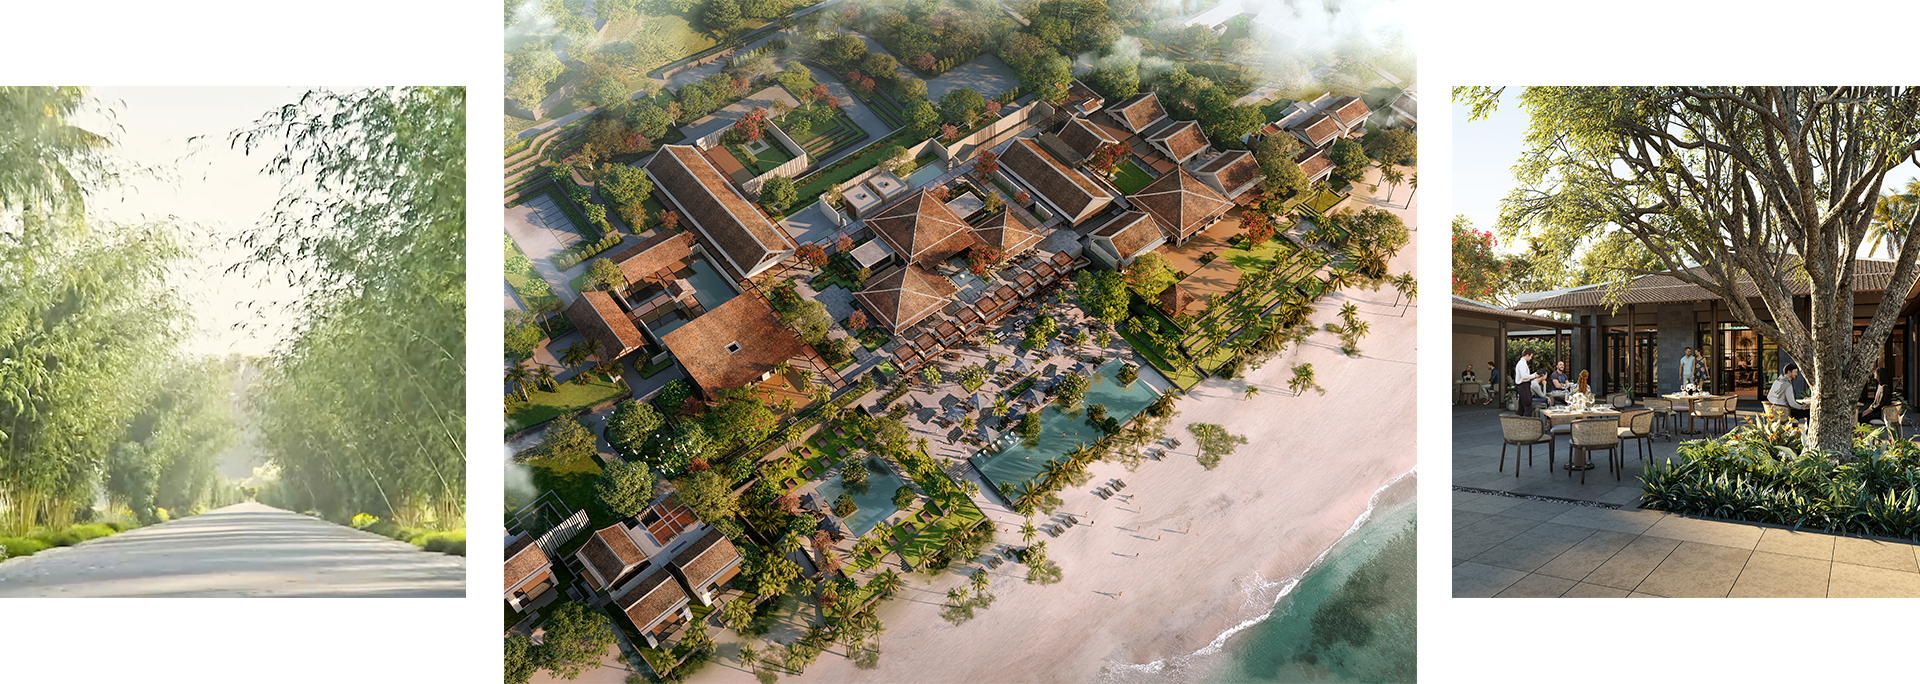 Park Hyatt Phu Quoc Residences gắn với cảm hứng ngôi làng Việt truyền thống nằm bên bờ biển nguyên sơ của đảo Ngọc